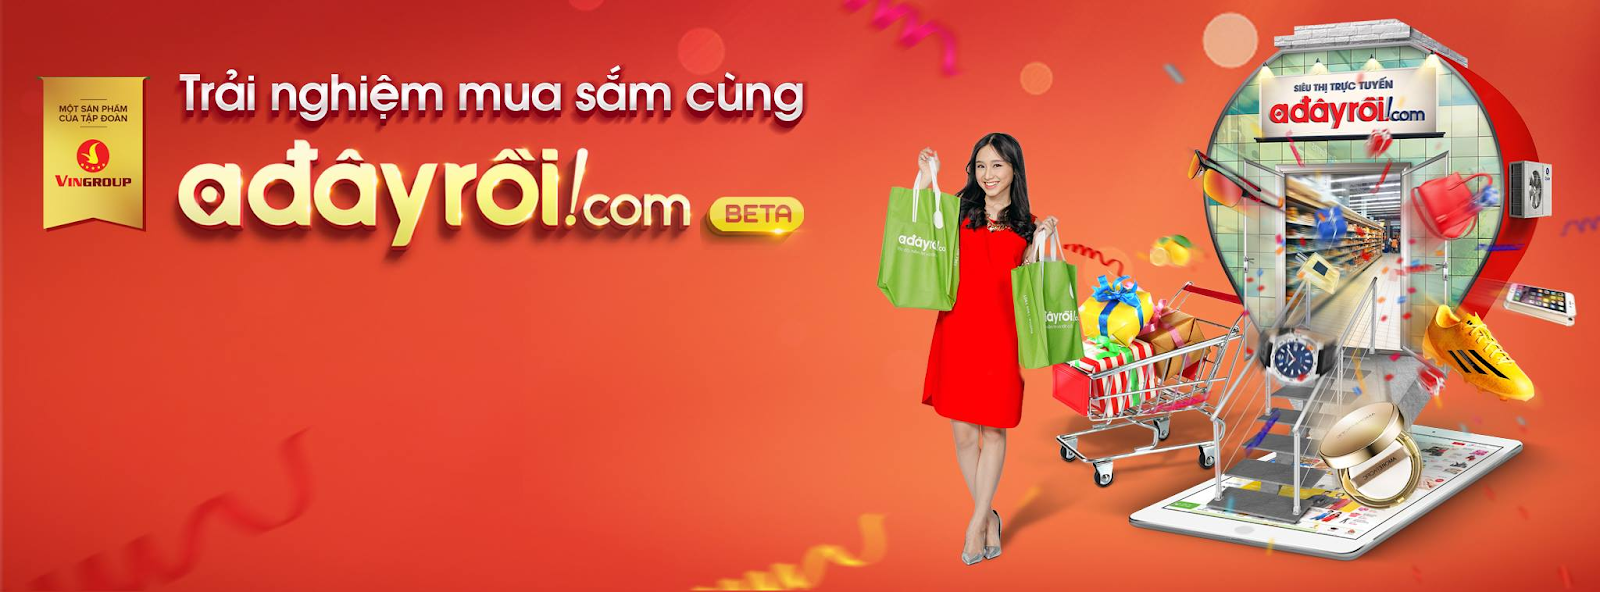 Adayroi.com - hệ thống bán hàng hàng đầu Việt Nam